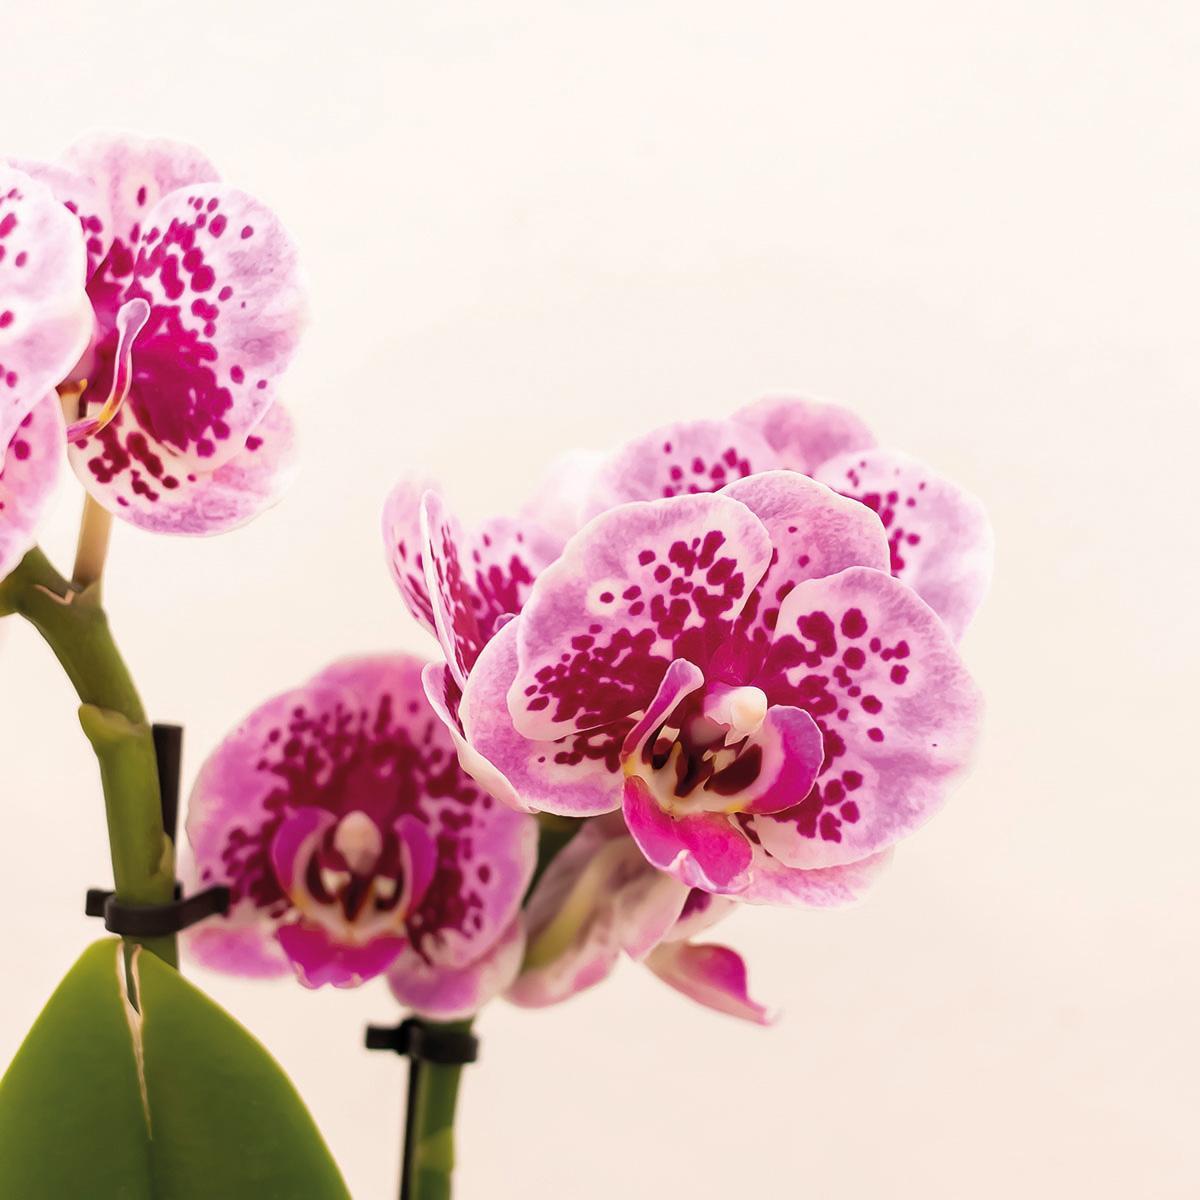 Kolibri Orchids | Roze paarse Phalaenopsis orchidee - El Salvador + Luxury gouden sierpot - potmaat Ø9cm - 35cm hoog | bloeiende kamerplant - vers van de kweker